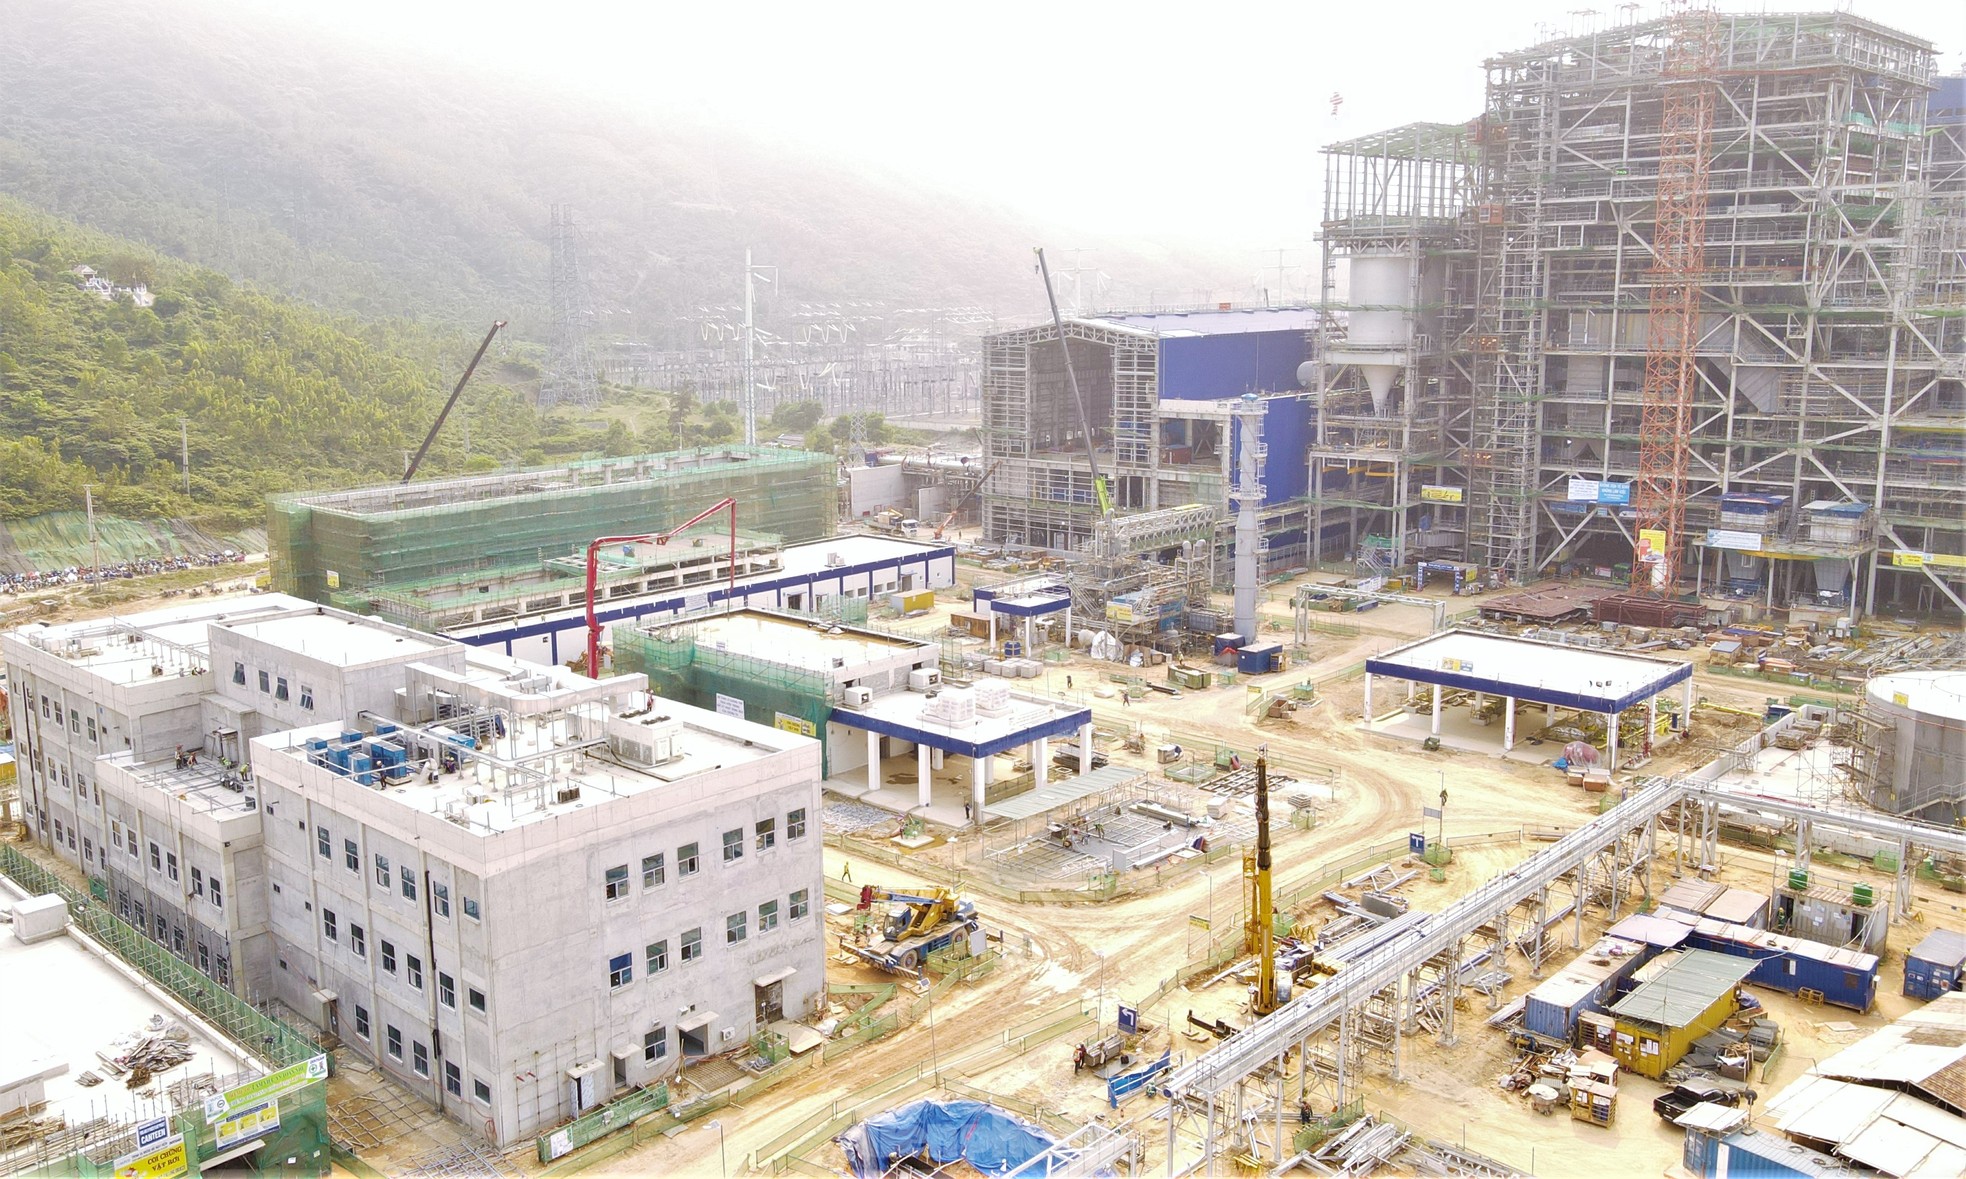 Cận cảnh công trường nhà máy Nhiệt điện 2,2 tỷ USD ở Hà Tĩnh ảnh 3